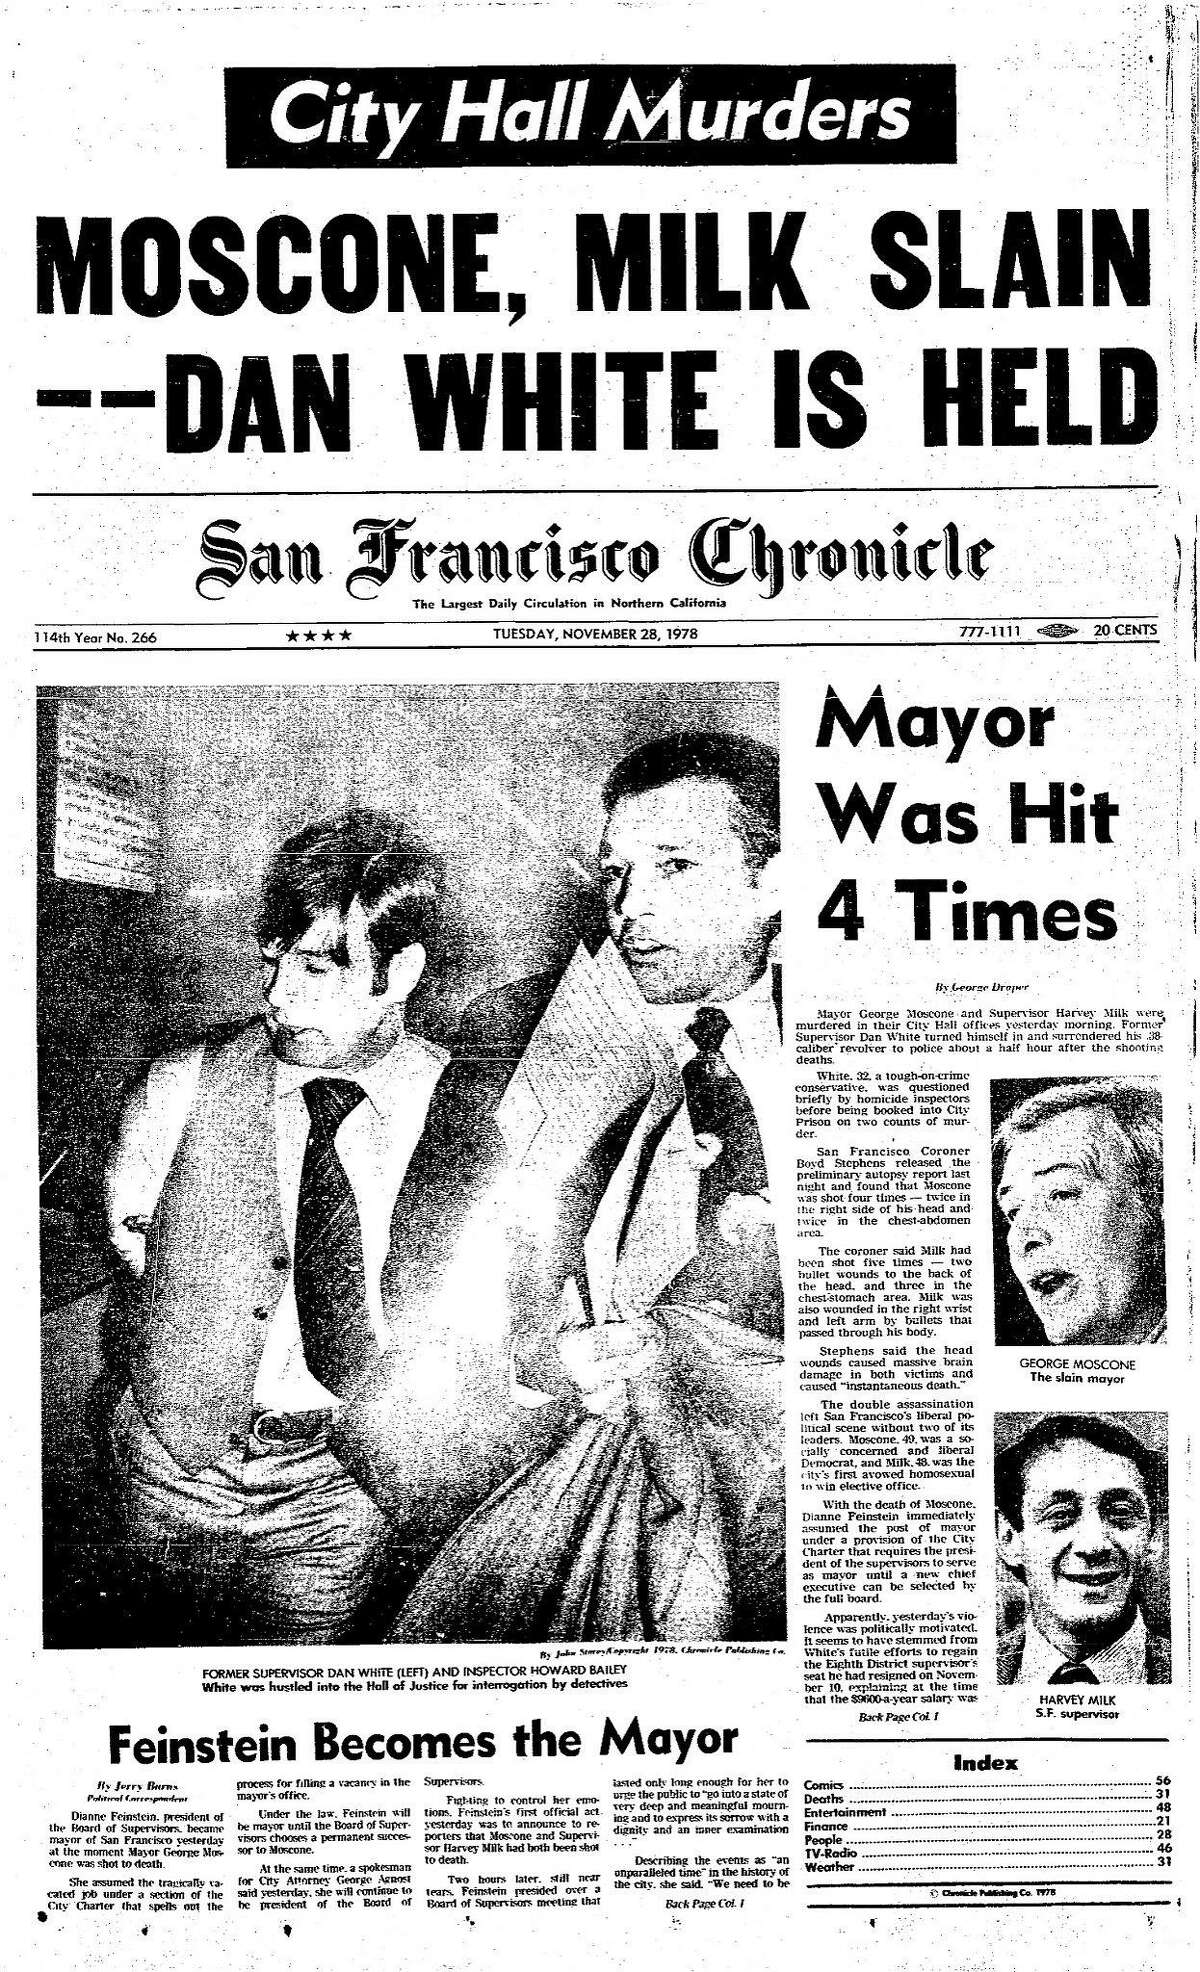 历史编年史头版1978年11月28日旧金山市长乔治·莫斯科尼和监督员哈维·米尔克在市政厅被监督员丹·怀特谋杀